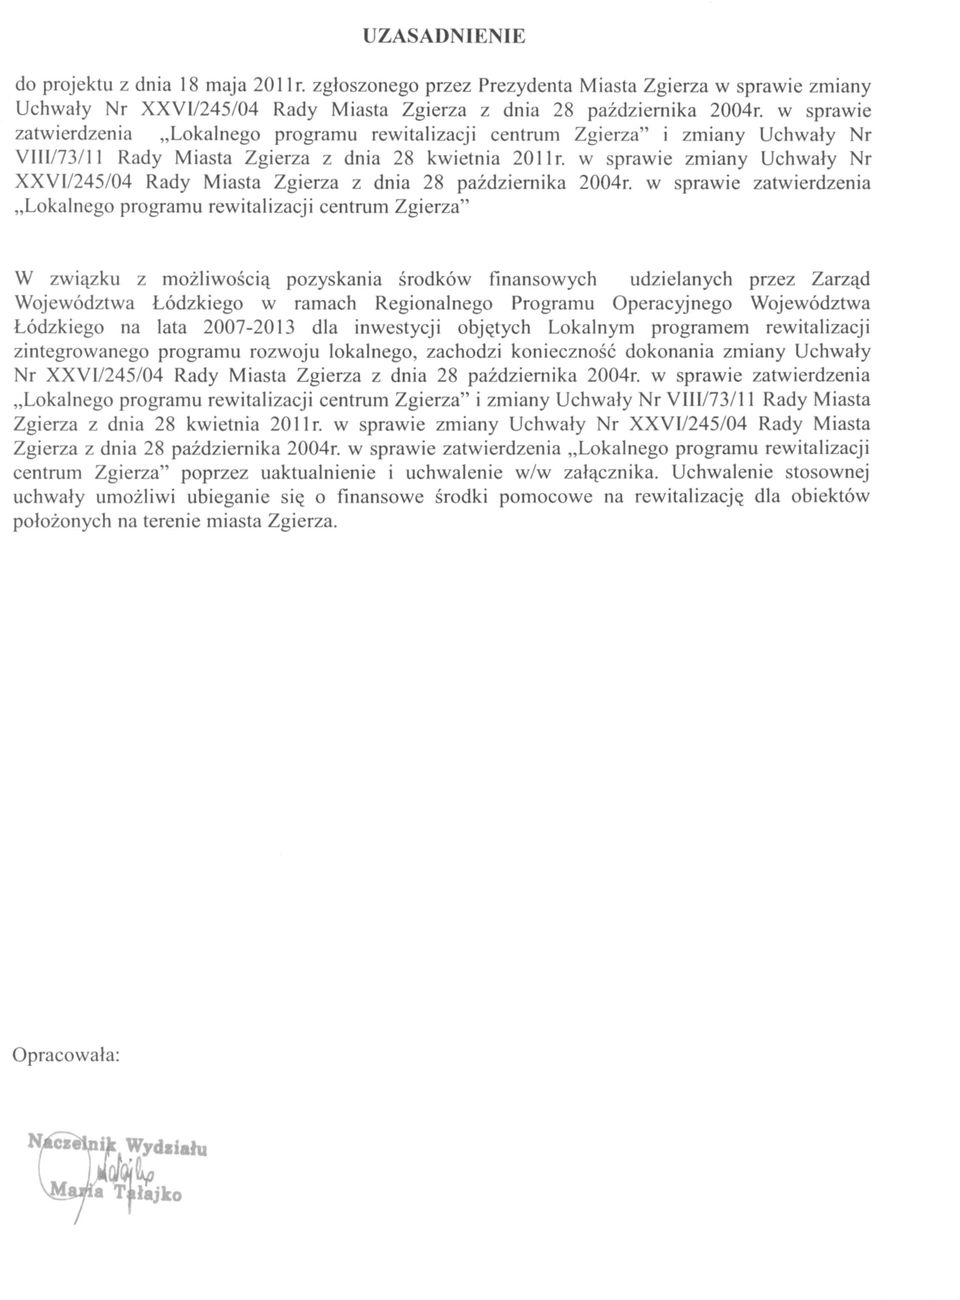 w sprawie zmiany Uchwały Nr XXVI/245/04 Rady Miasta Zgierza z dnia 28 października 2004r.